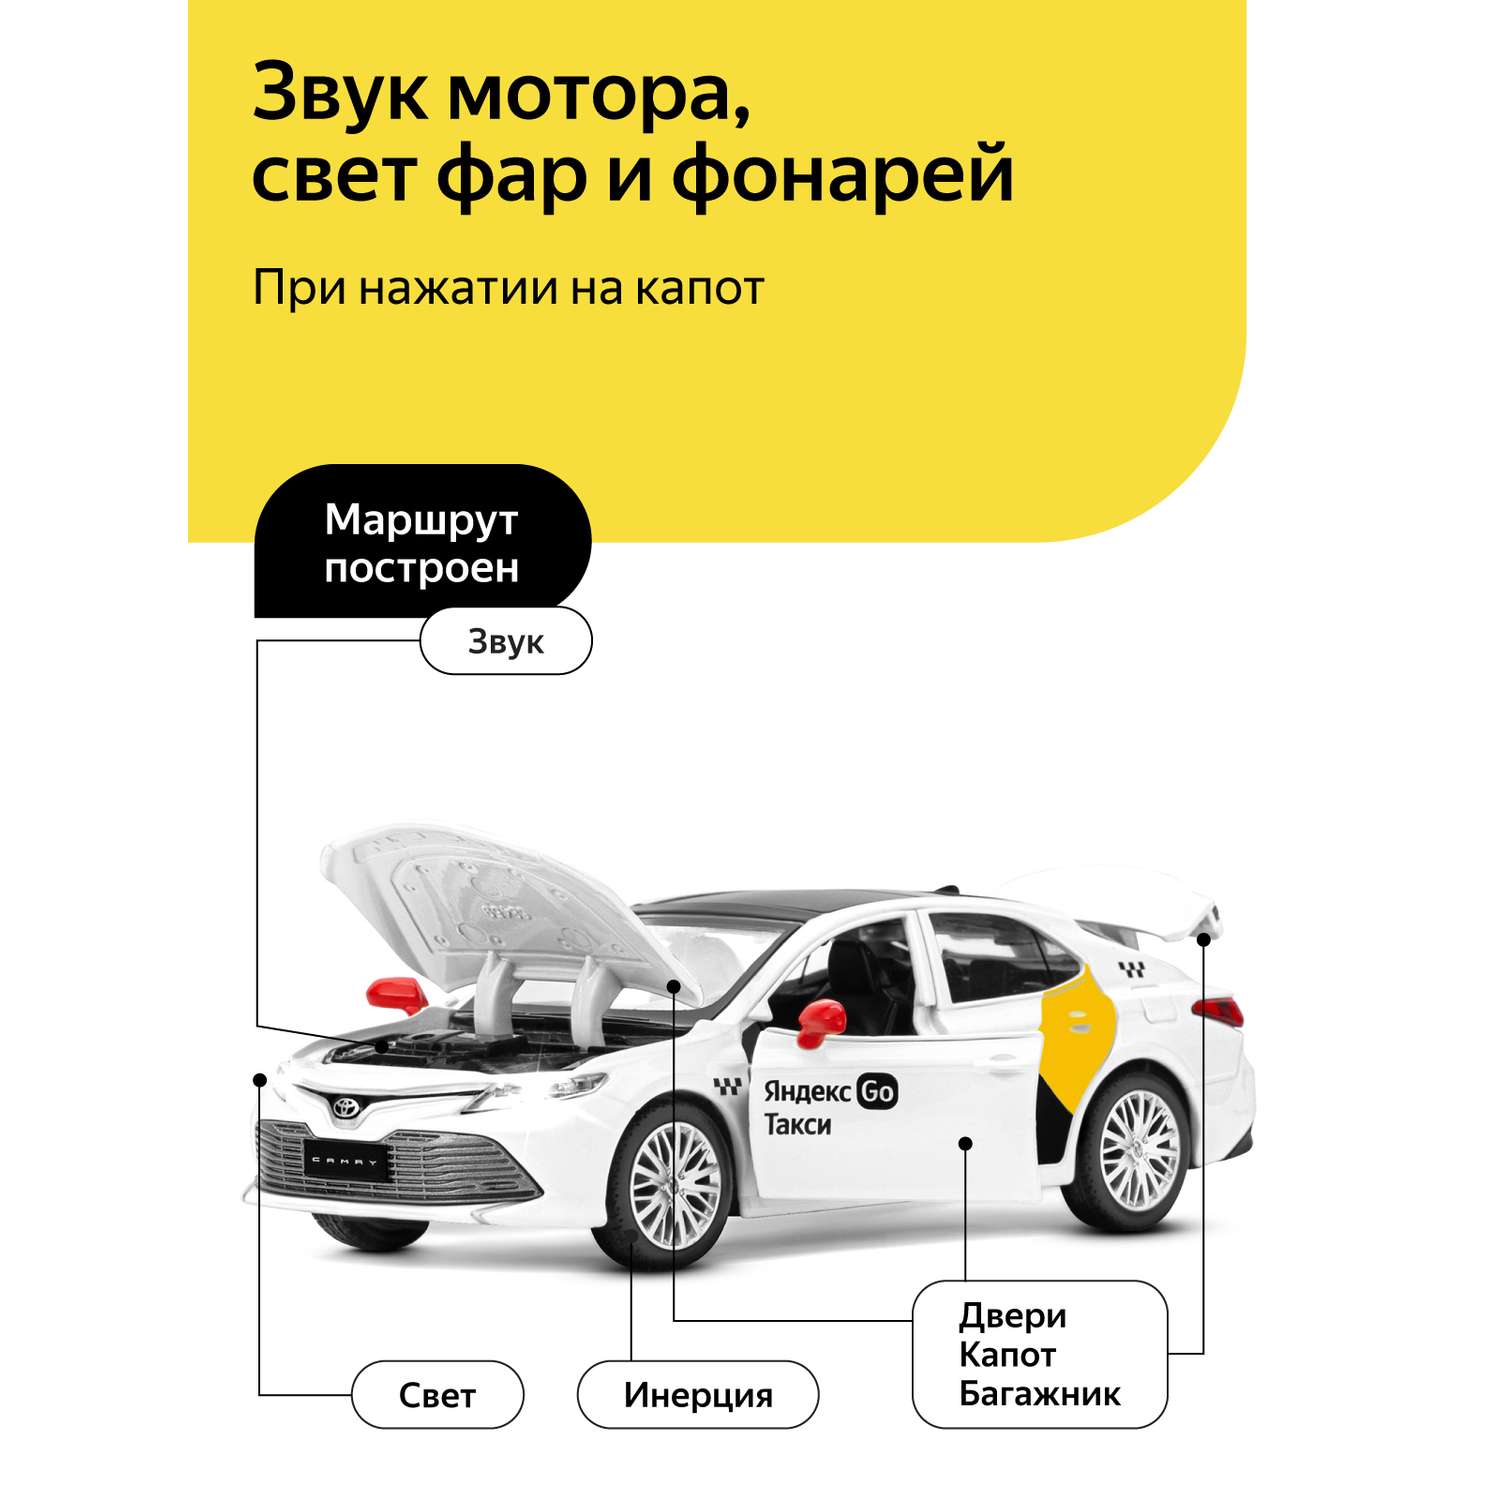 Машинка металлическая Яндекс GO 1:34 Toyota Camry белый инерция Озвучено Алисой JB1251483 - фото 2